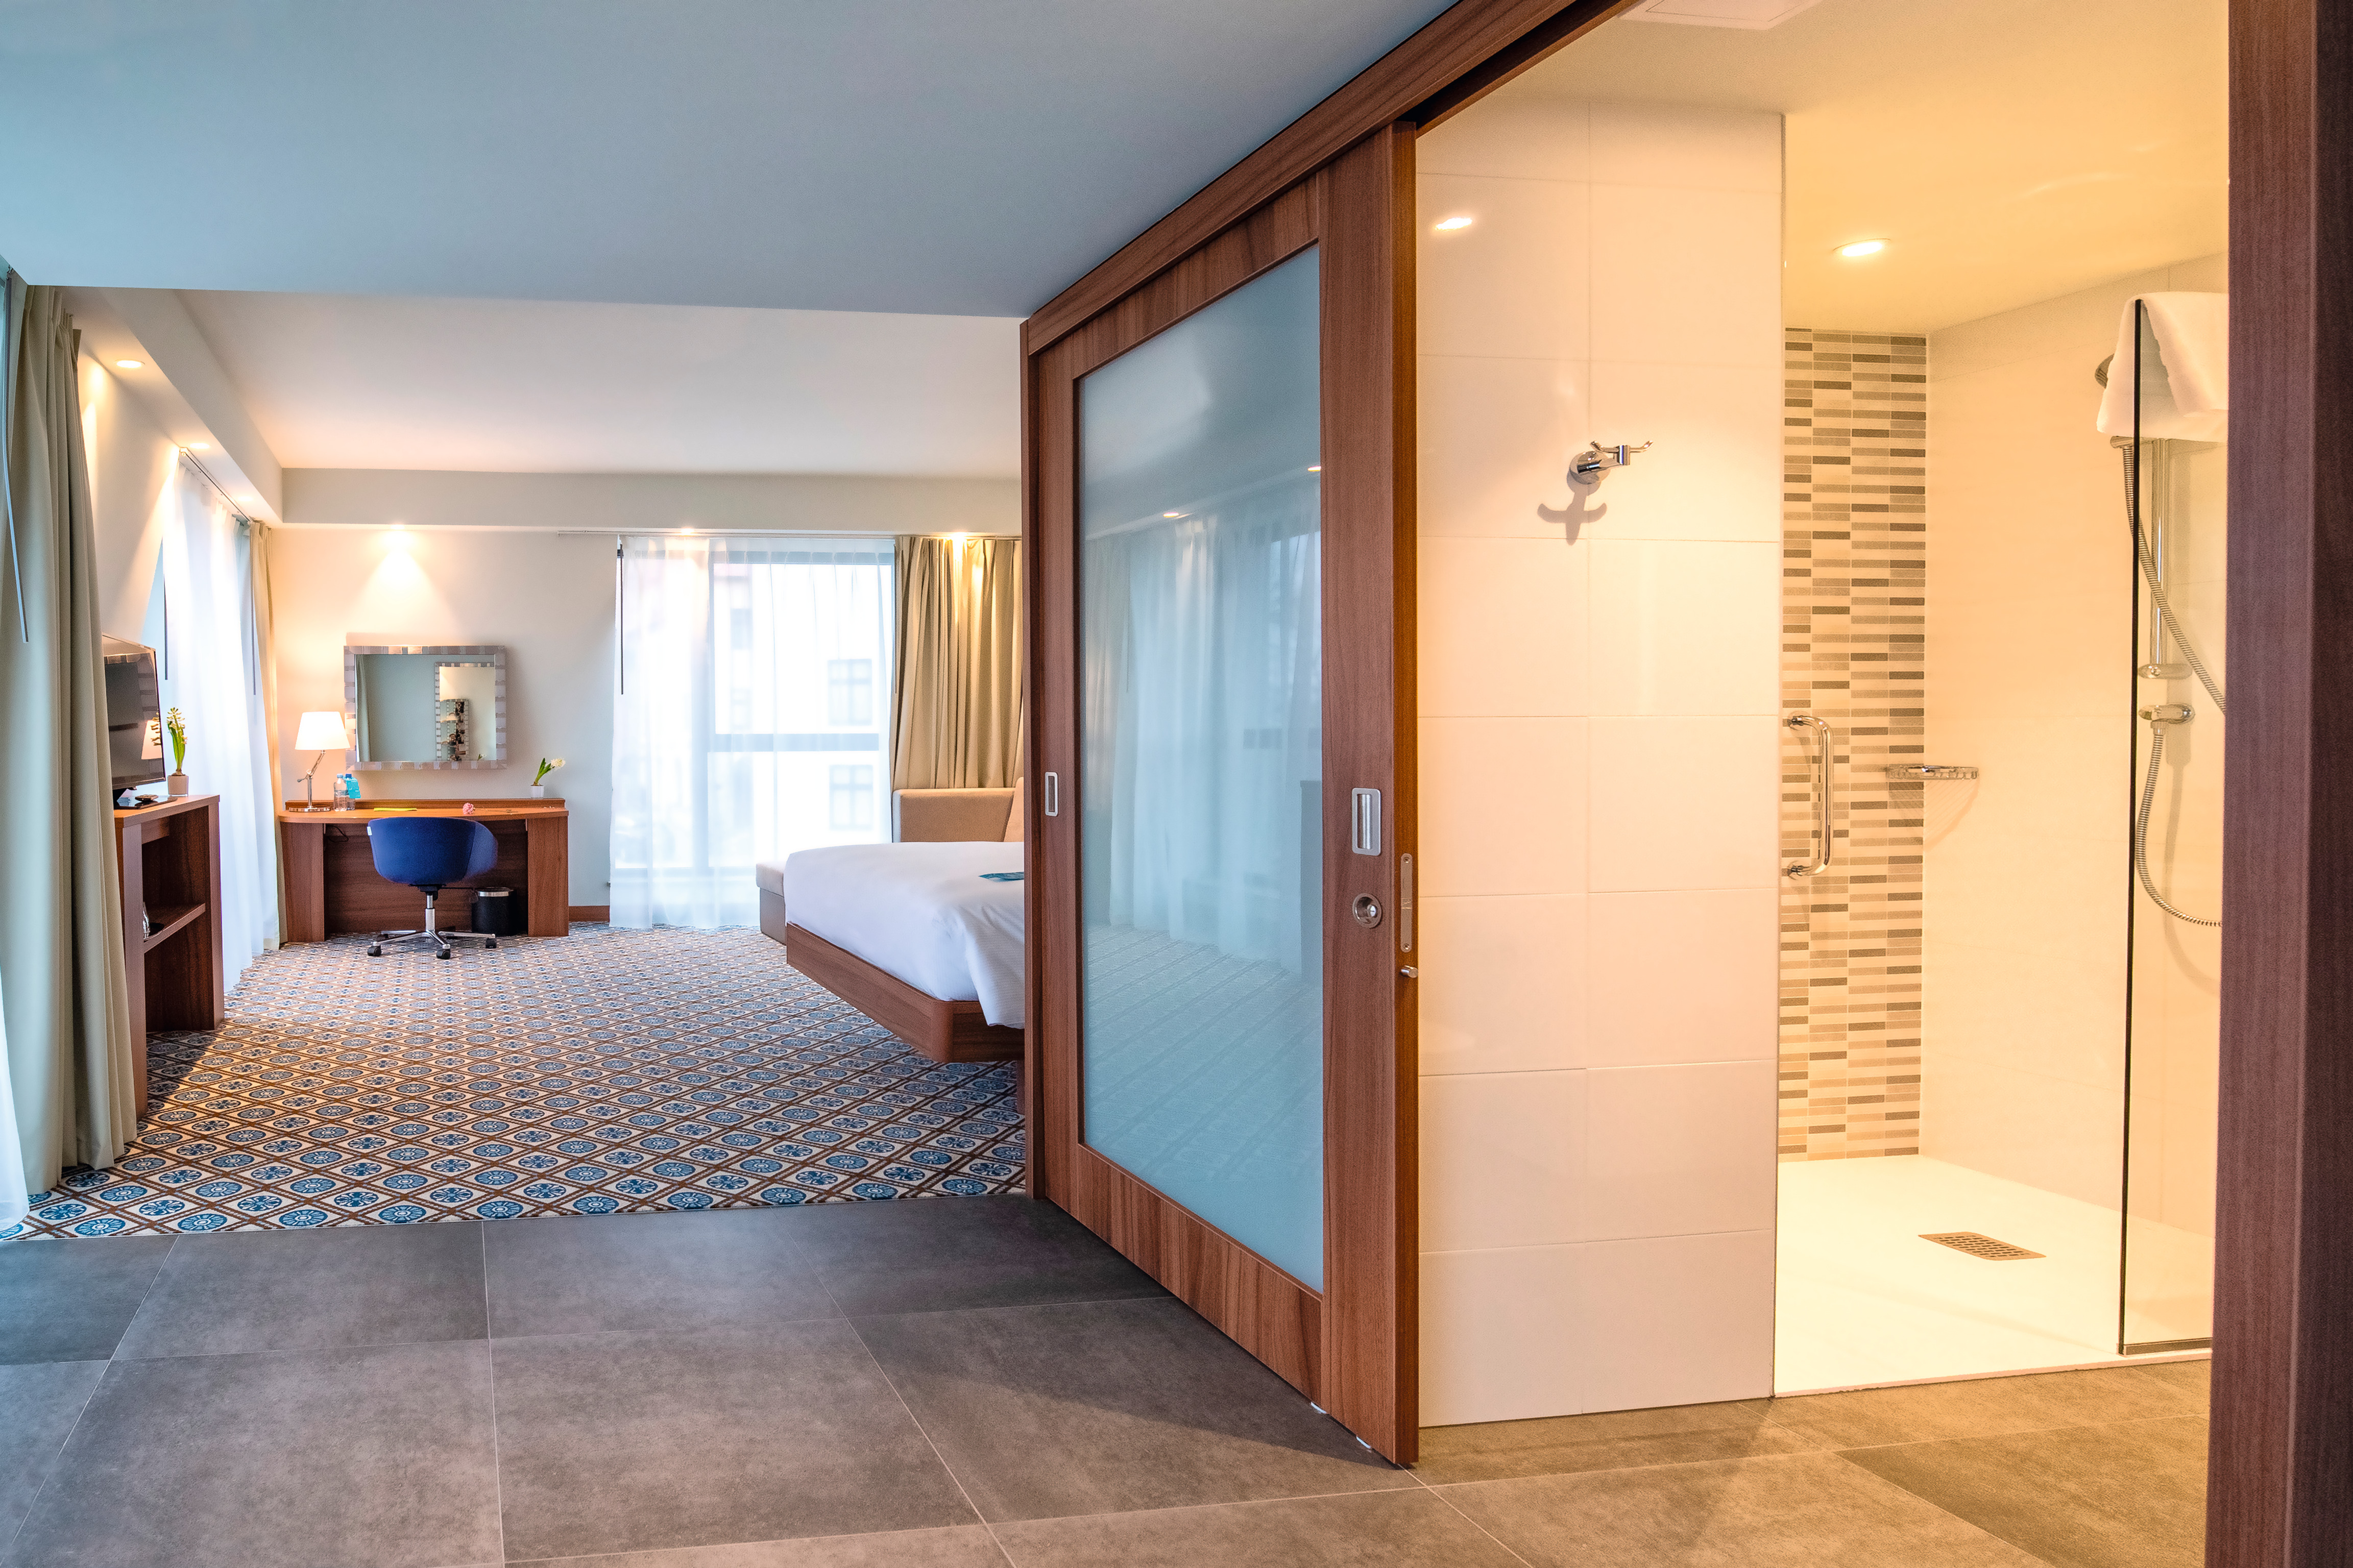 El H3734 ST9 Nogal de la Borgoña natural se usa en las habitaciones del hotel para crear un aspecto moderno.